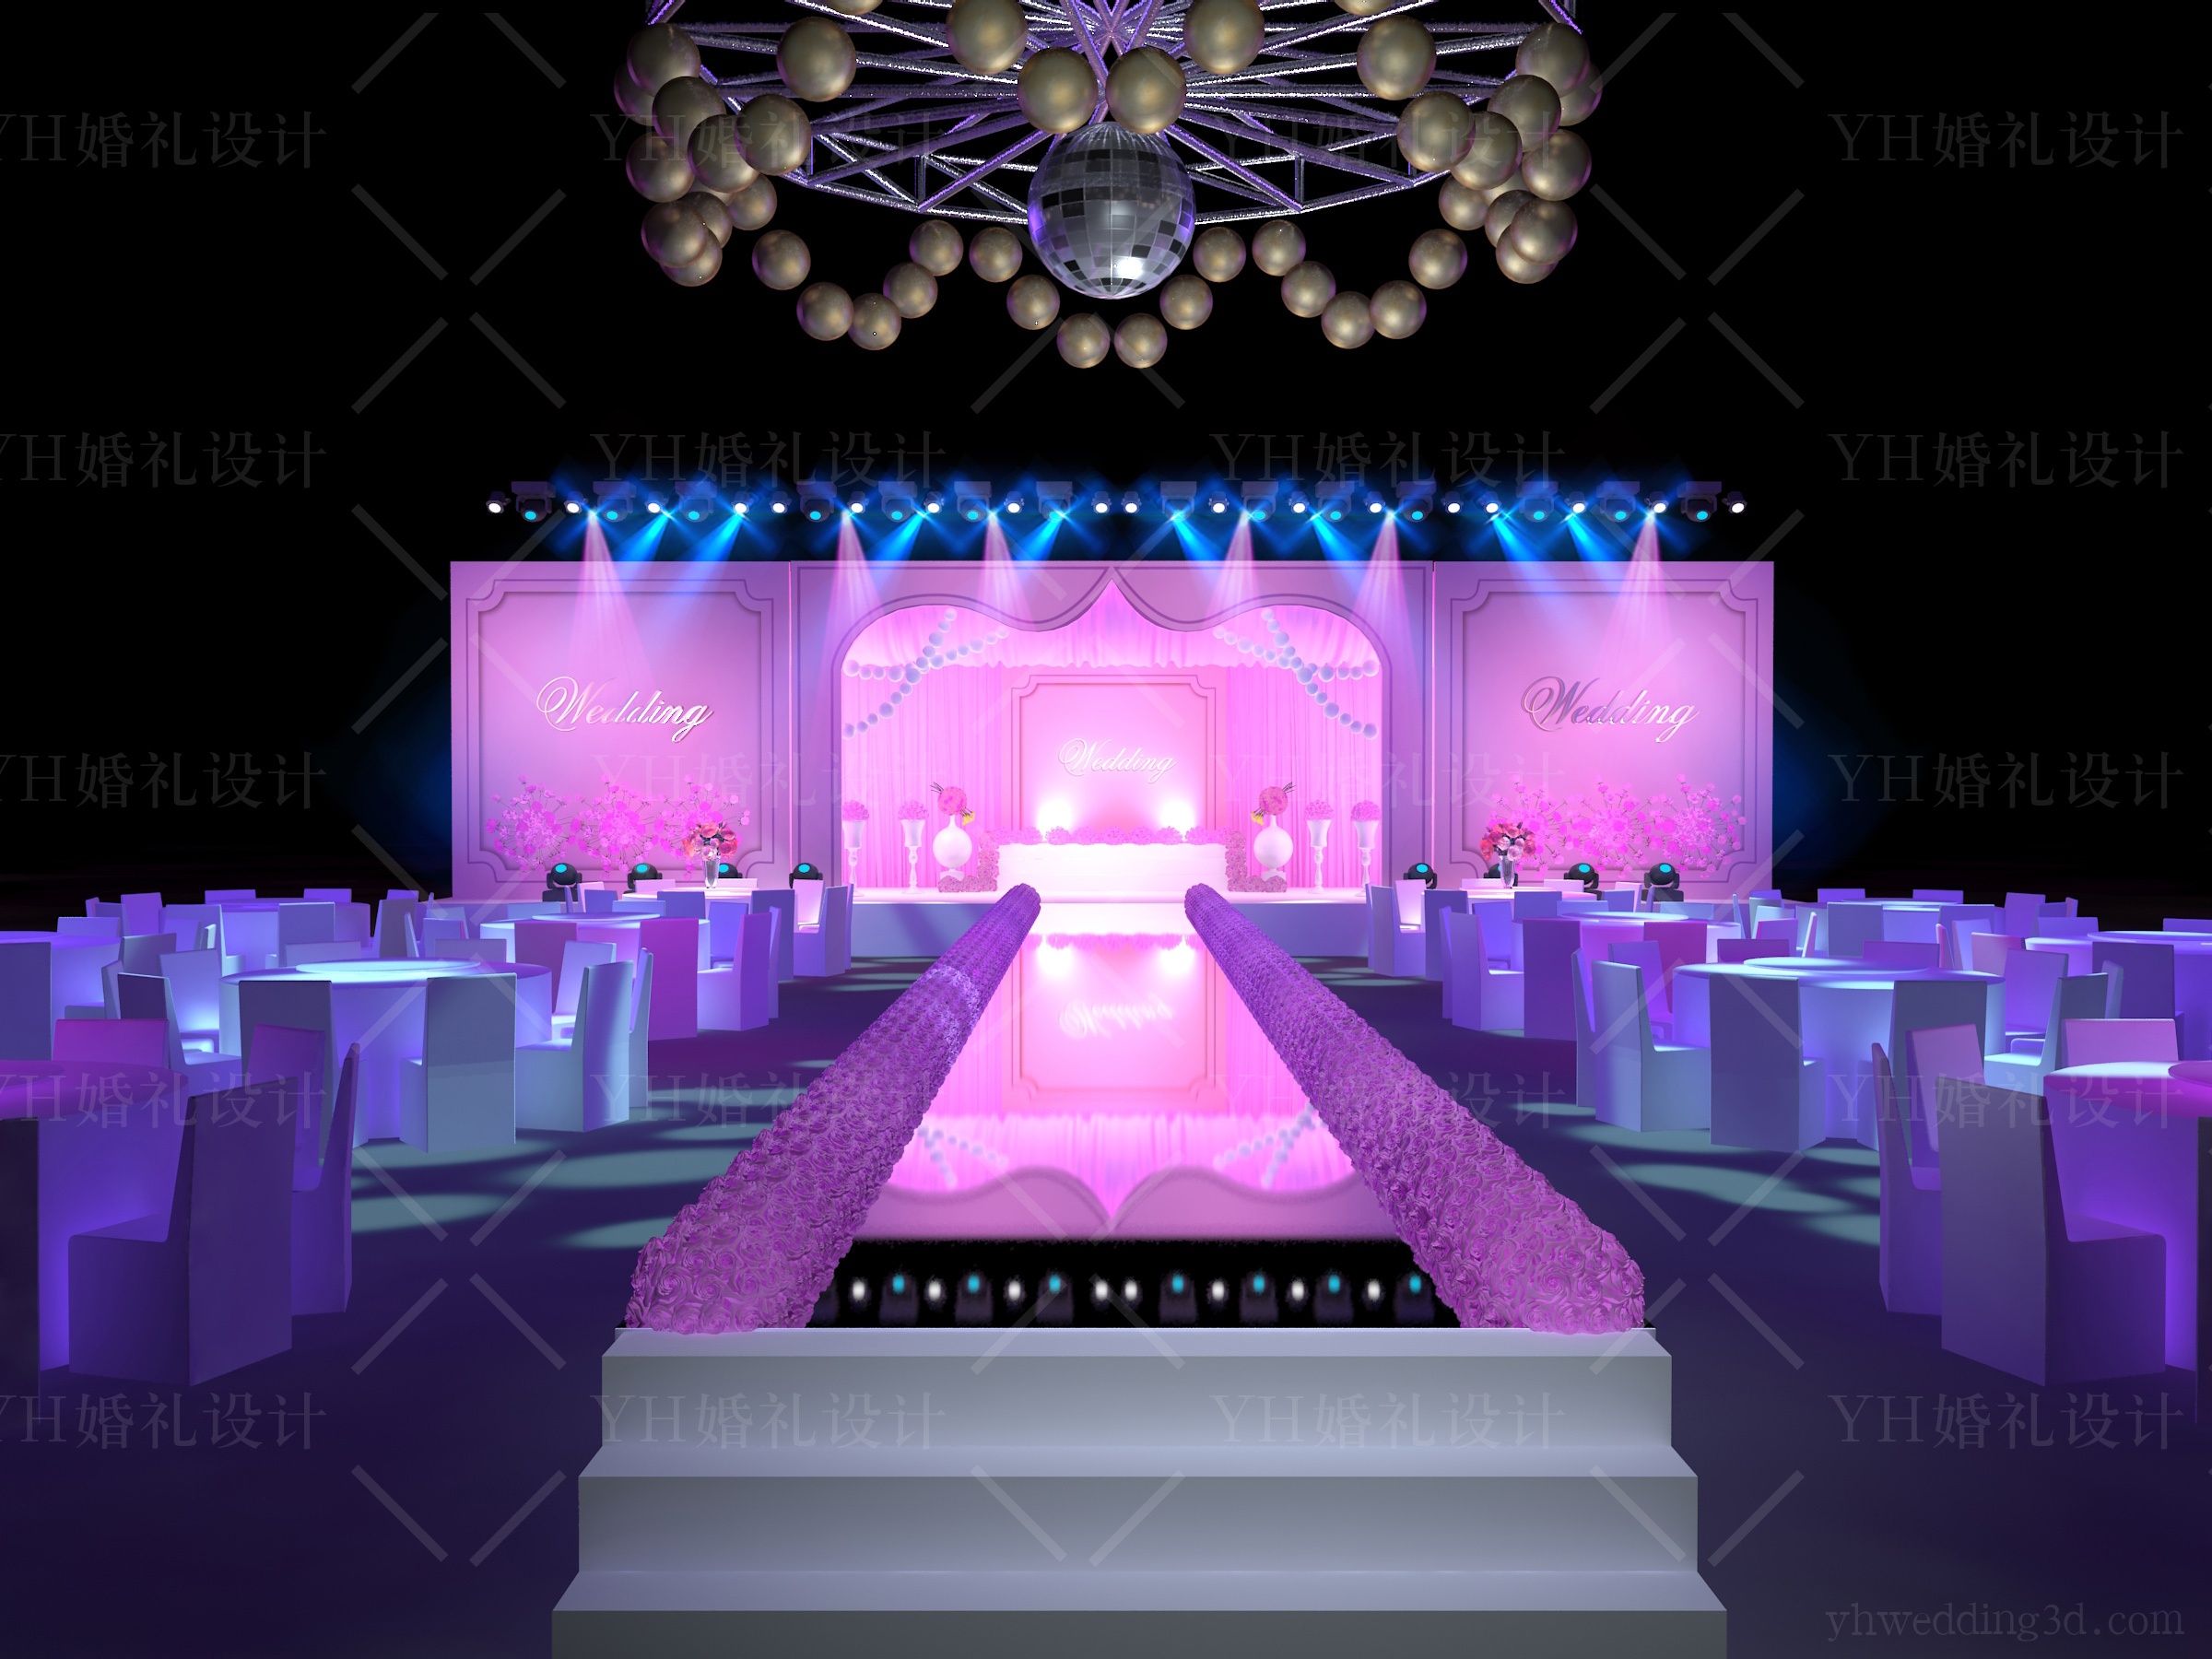 yhwedding紫粉色婚礼3d效果图设计